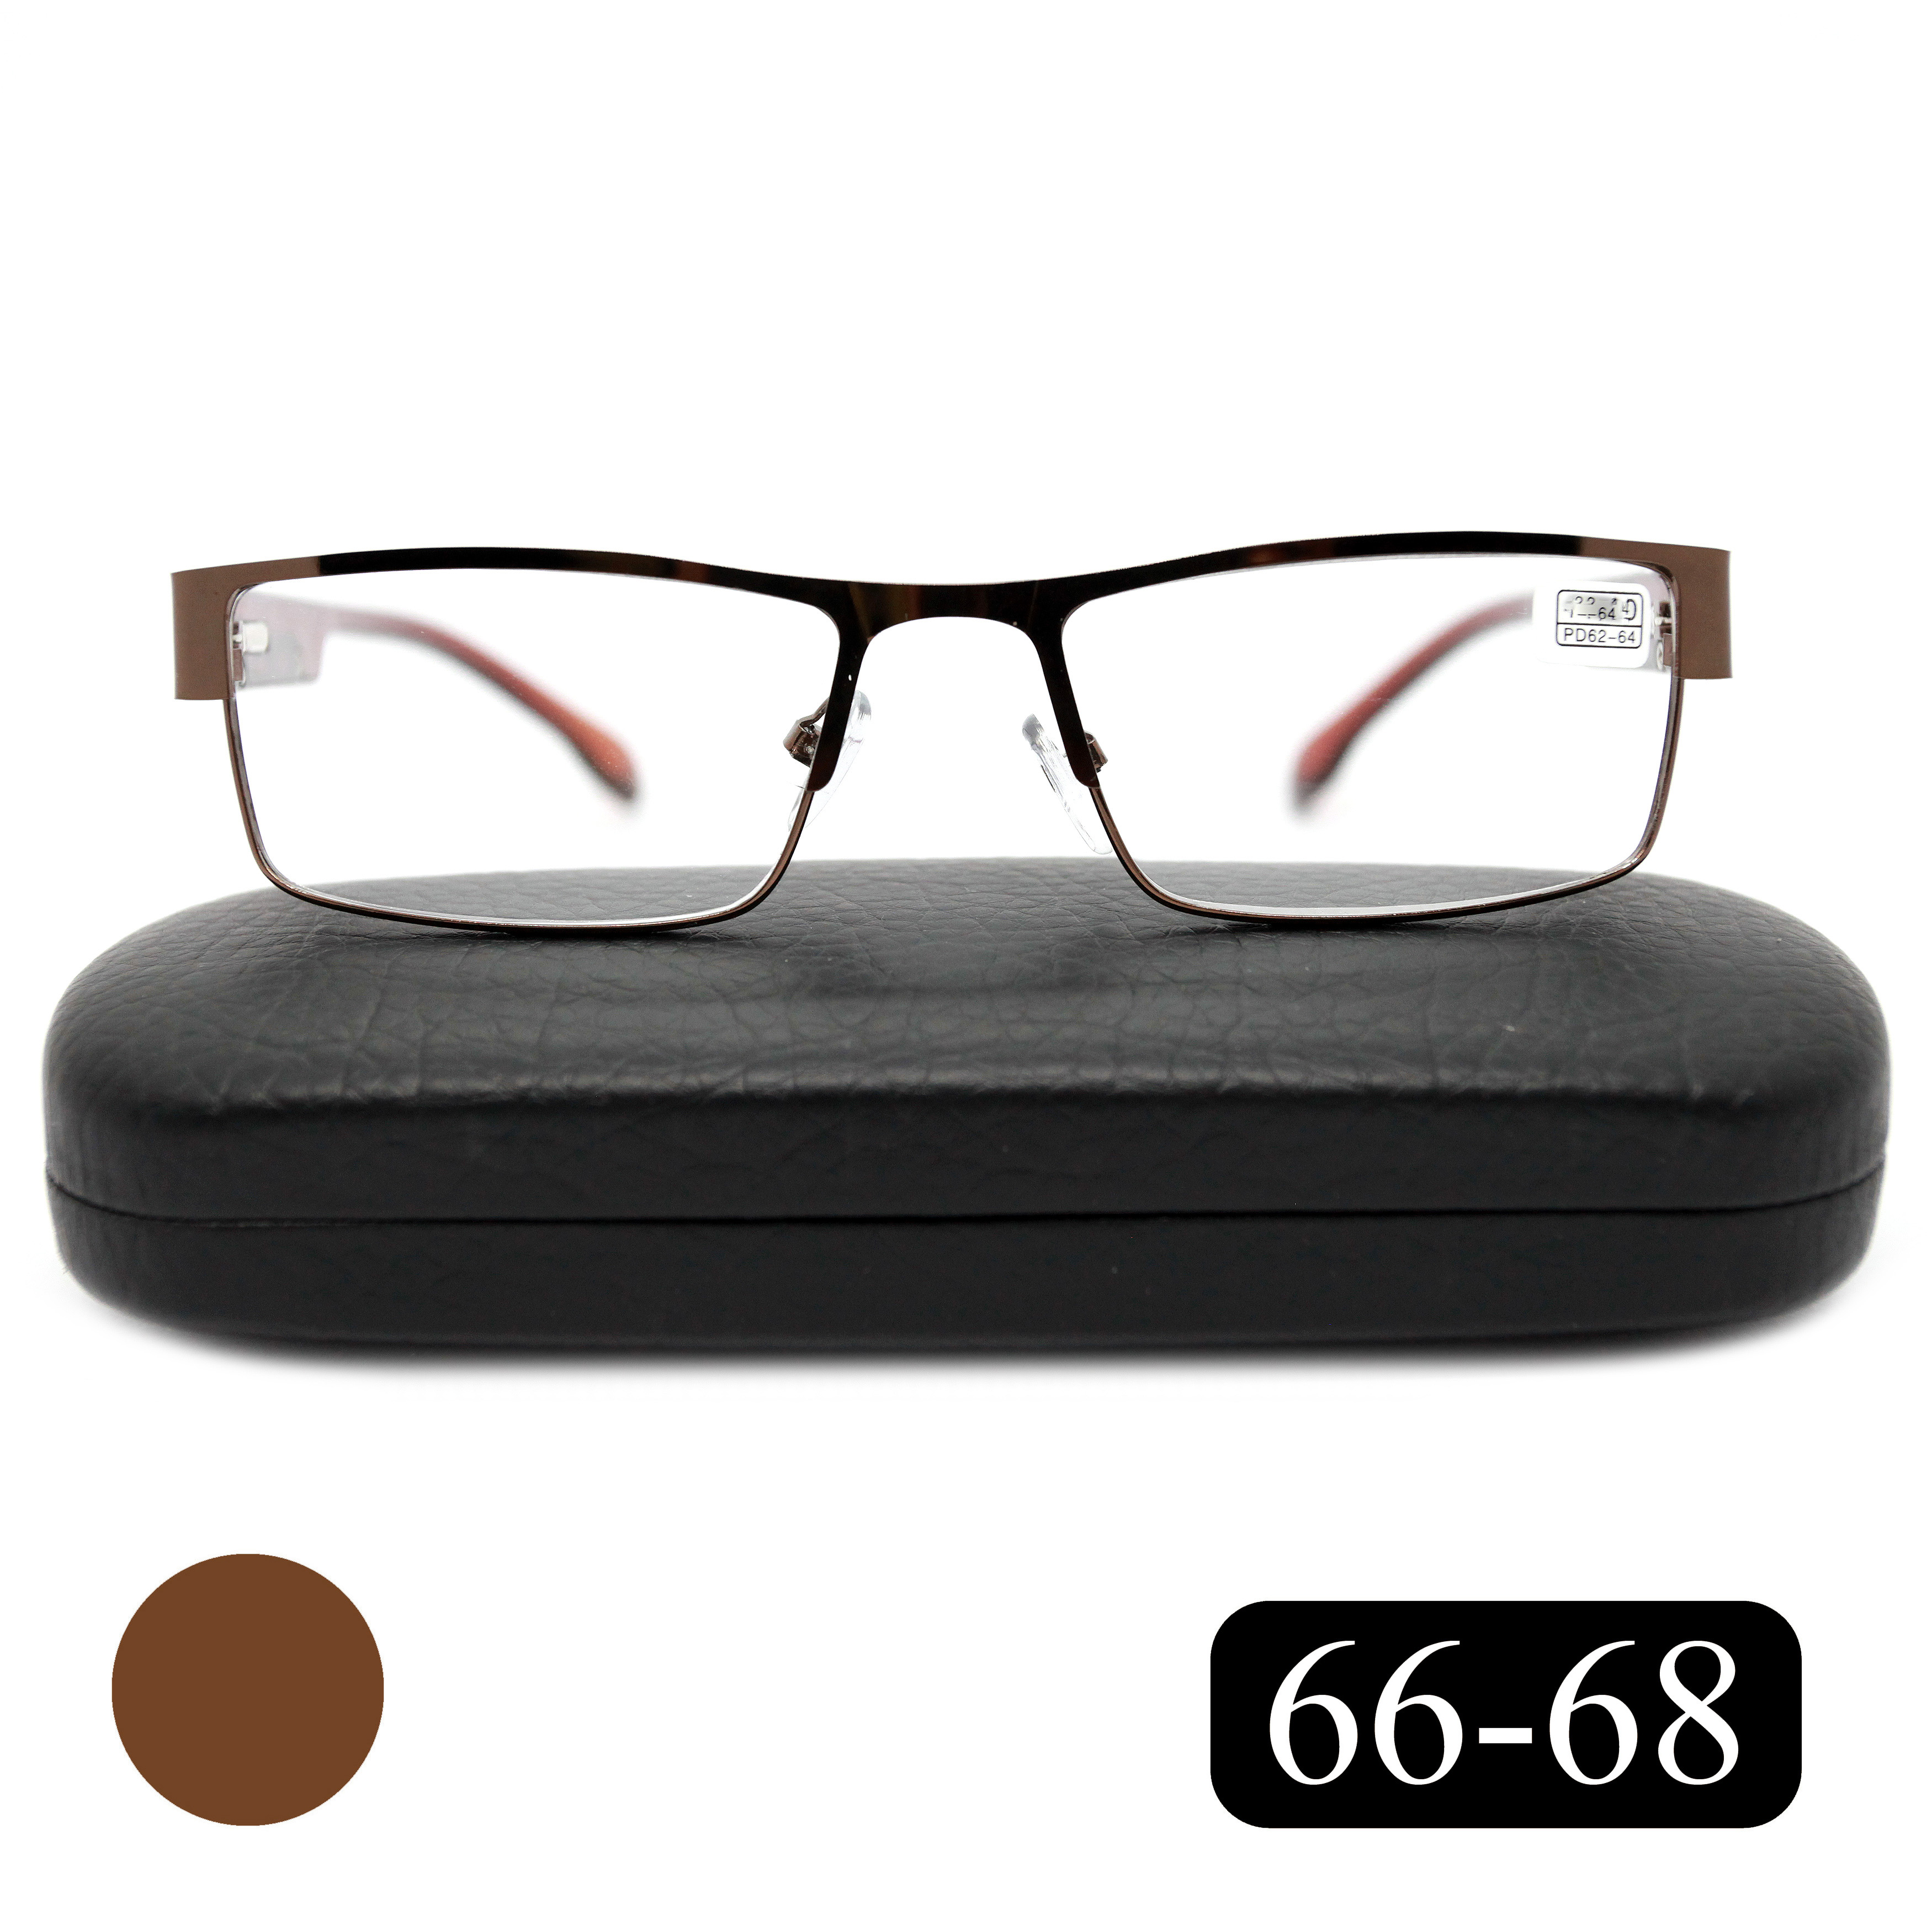 Готовые очки MOCT 019 +1,25, для чтения, c футляром, коричневый, РЦ 66-68